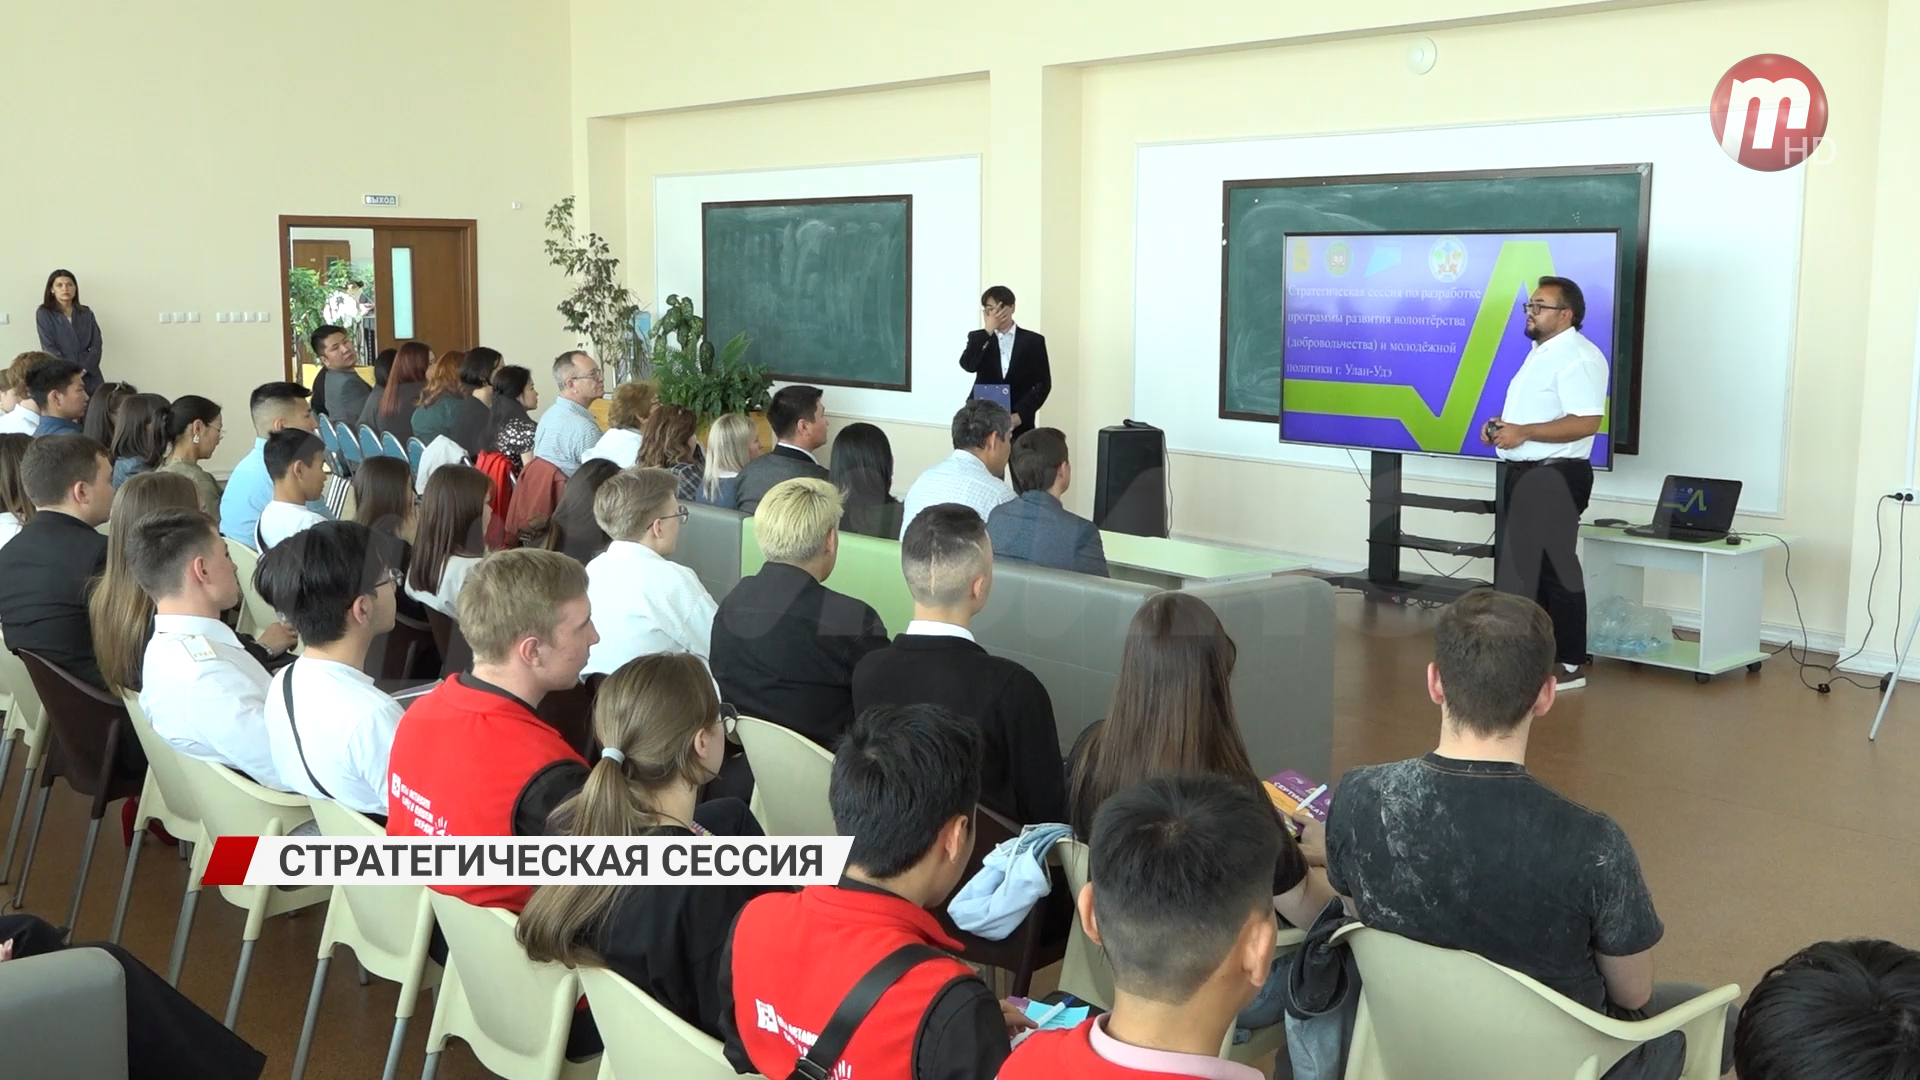 В Улан-Удэ прошла Стратегическая сессия по разработке программы развития молодежной политики